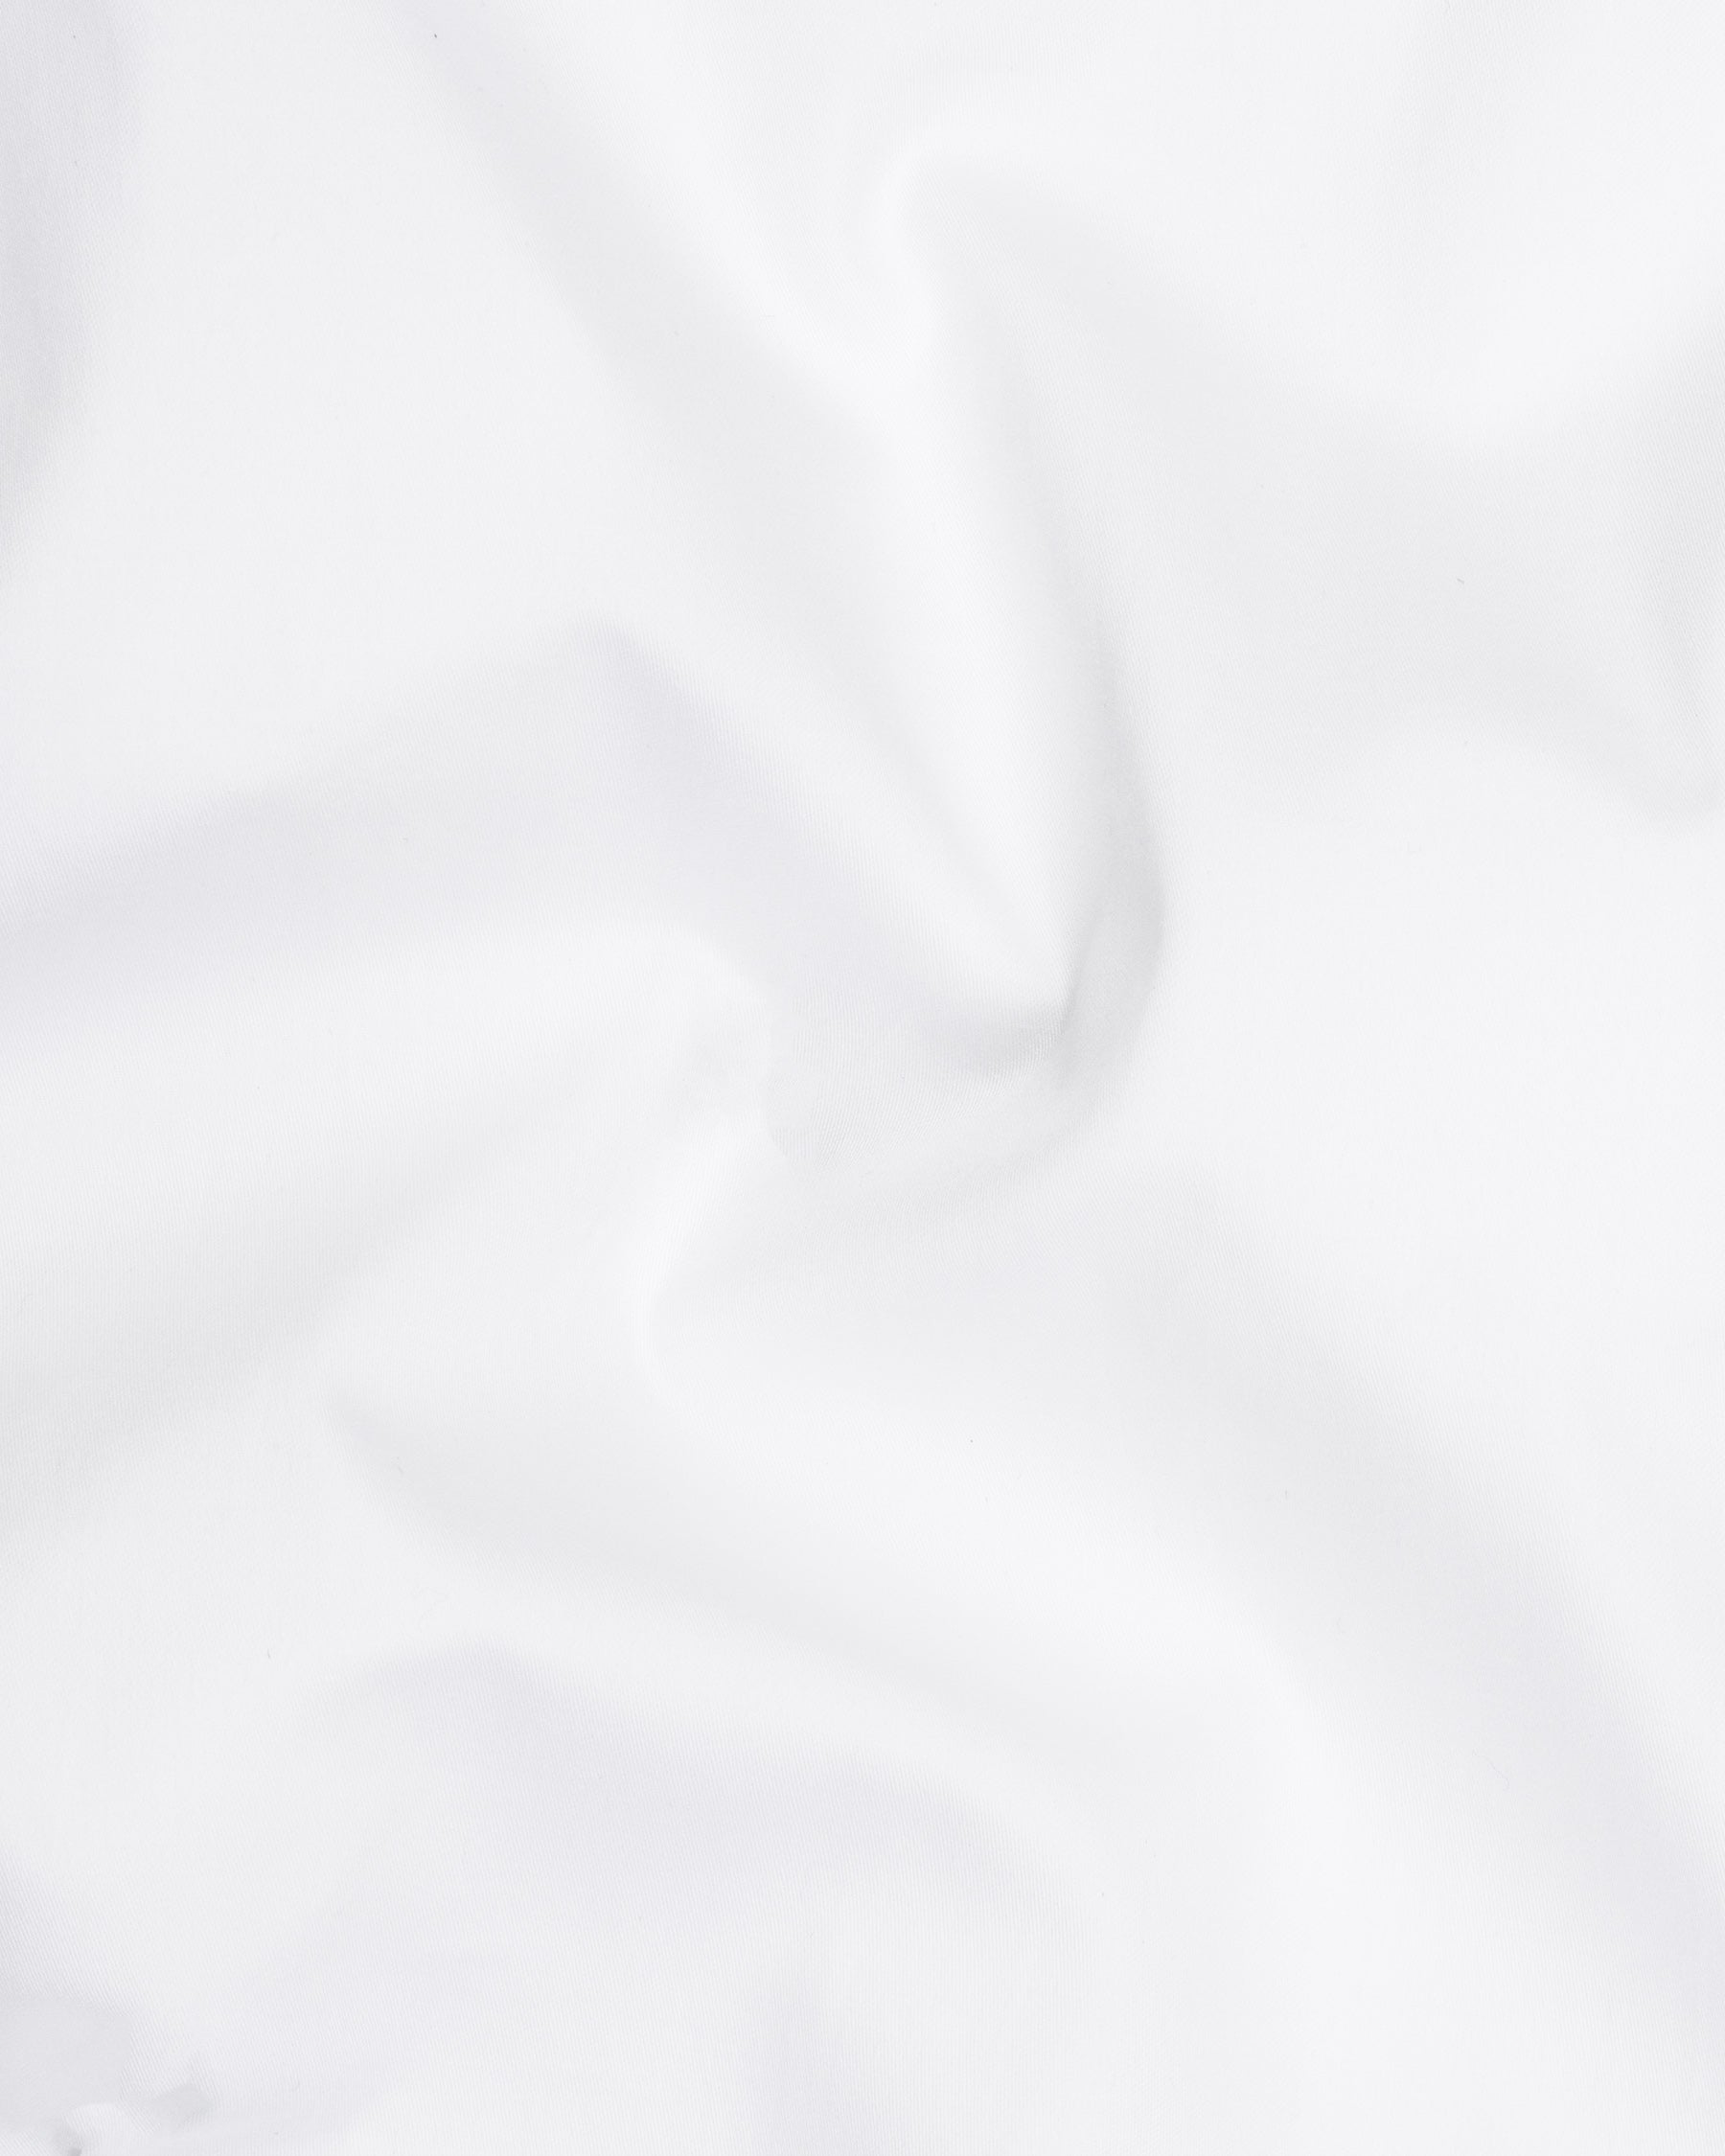 Bright White Subtle Sheen Striped Super Soft Premium Cotton Shirt 6818-BLK-P302-38,6818-BLK-P302-H-38,6818-BLK-P302-39,6818-BLK-P302-H-39,6818-BLK-P302-40,6818-BLK-P302-H-40,6818-BLK-P302-42,6818-BLK-P302-H-42,6818-BLK-P302-44,6818-BLK-P302-H-44,6818-BLK-P302-46,6818-BLK-P302-H-46,6818-BLK-P302-48,6818-BLK-P302-H-48,6818-BLK-P302-50,6818-BLK-P302-H-50,6818-BLK-P302-52,6818-BLK-P302-H-52